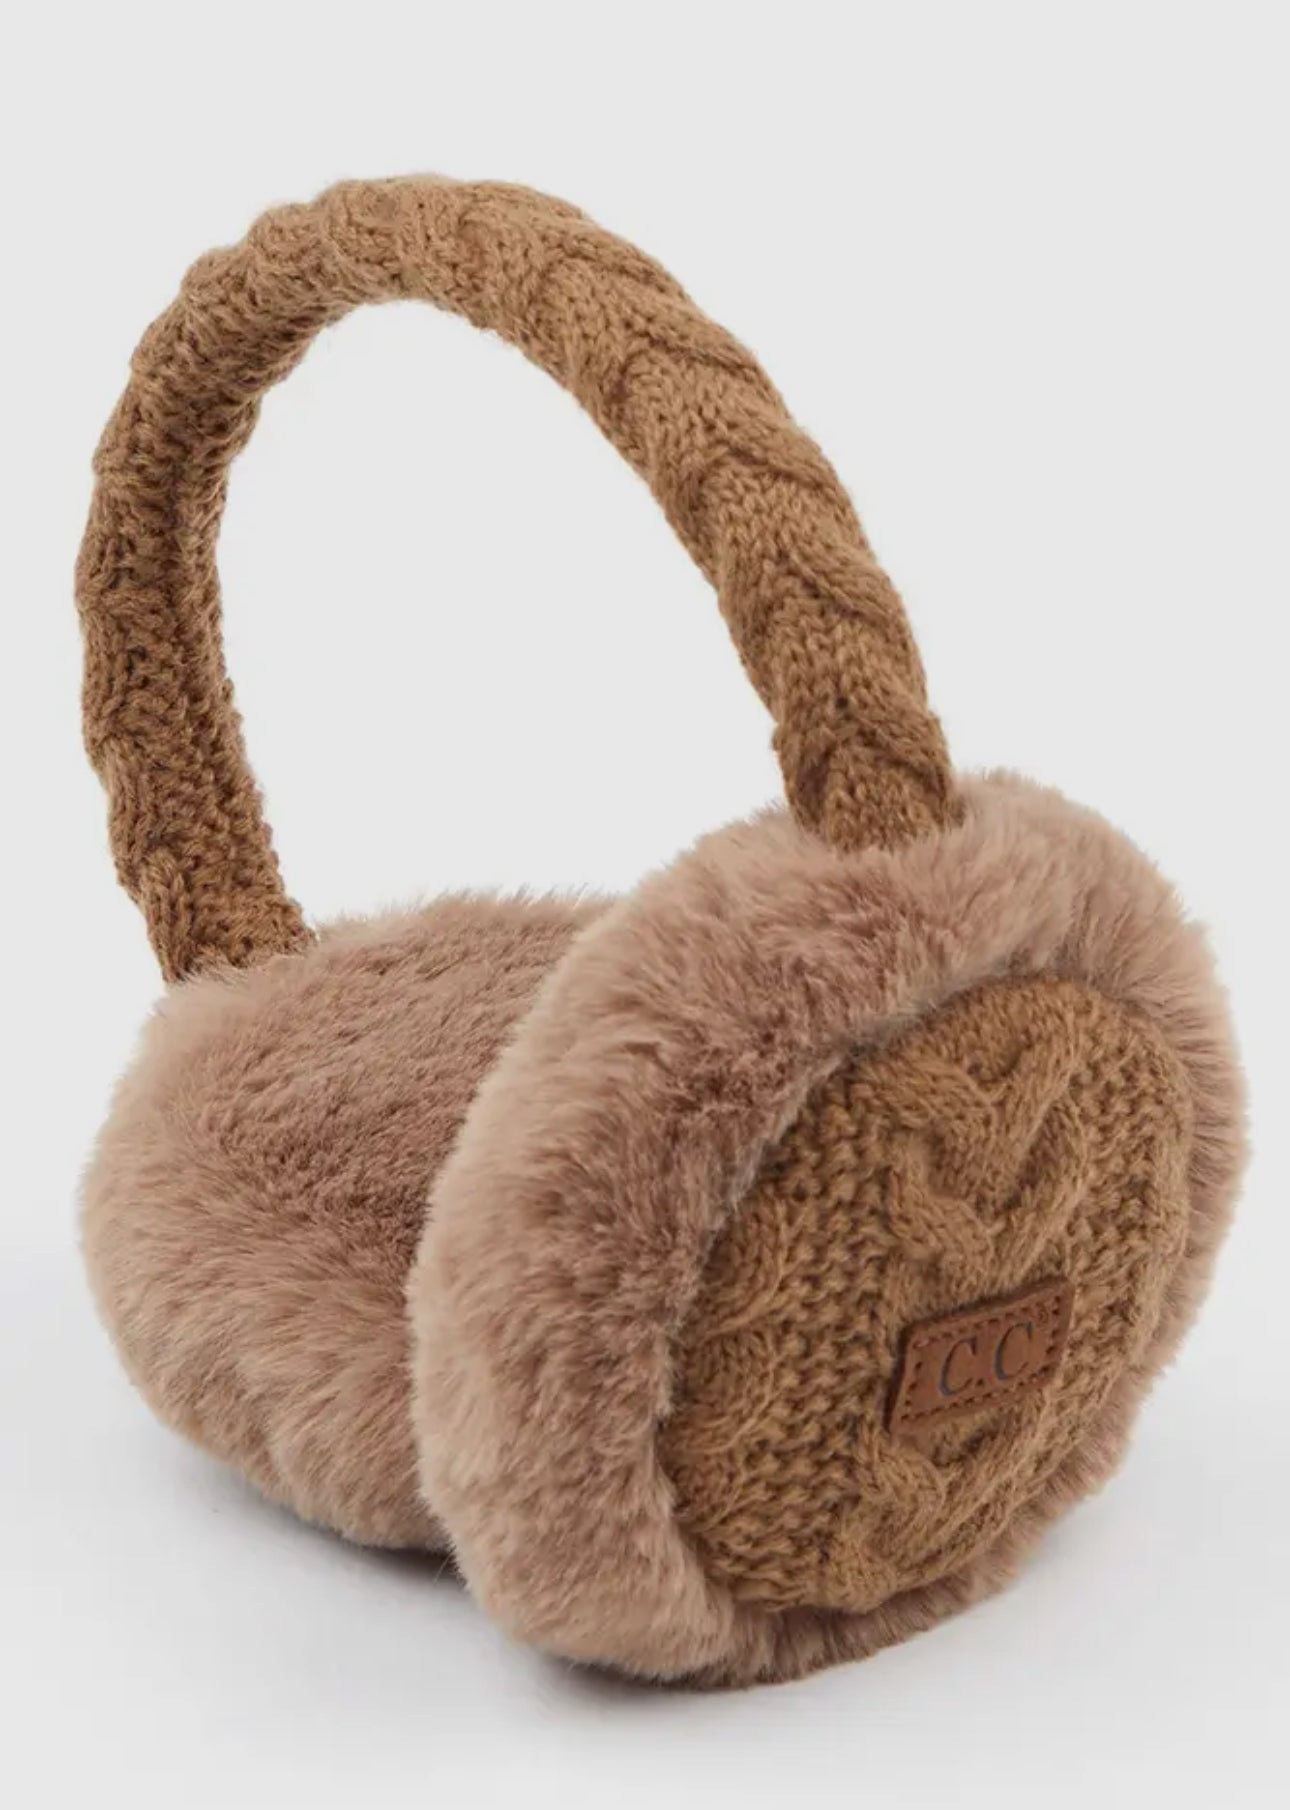 C.C. Cable knit fur earmuffs